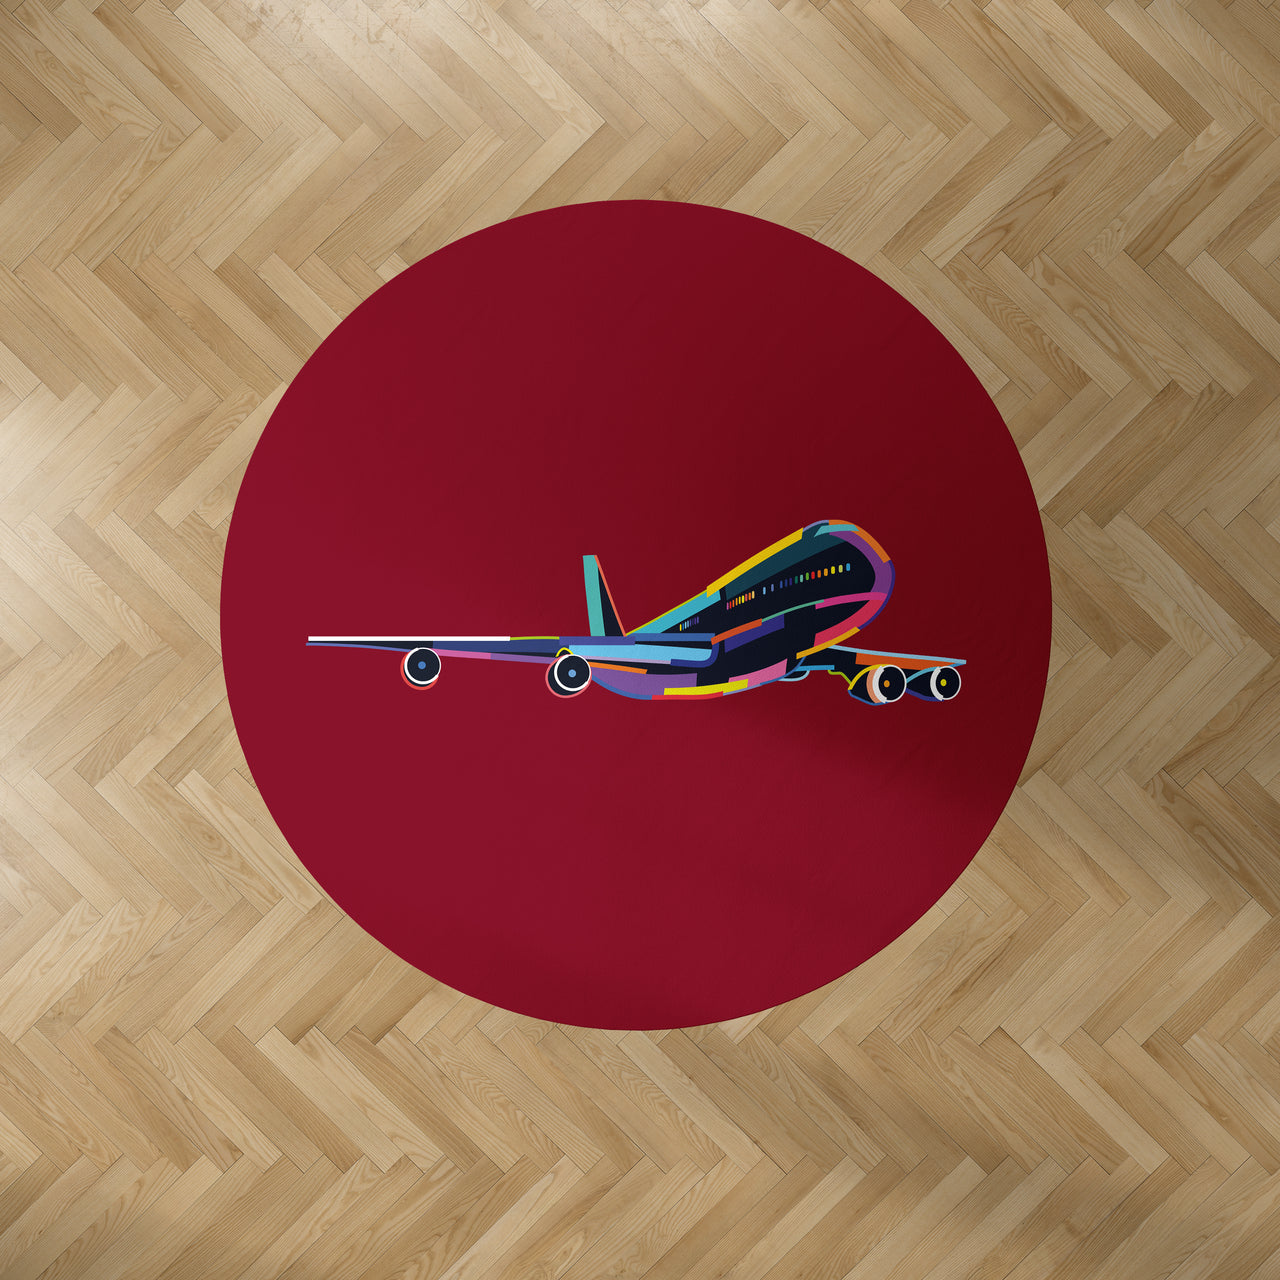 Multicolor Airplane Designed Carpet & Floor Mats (Round)